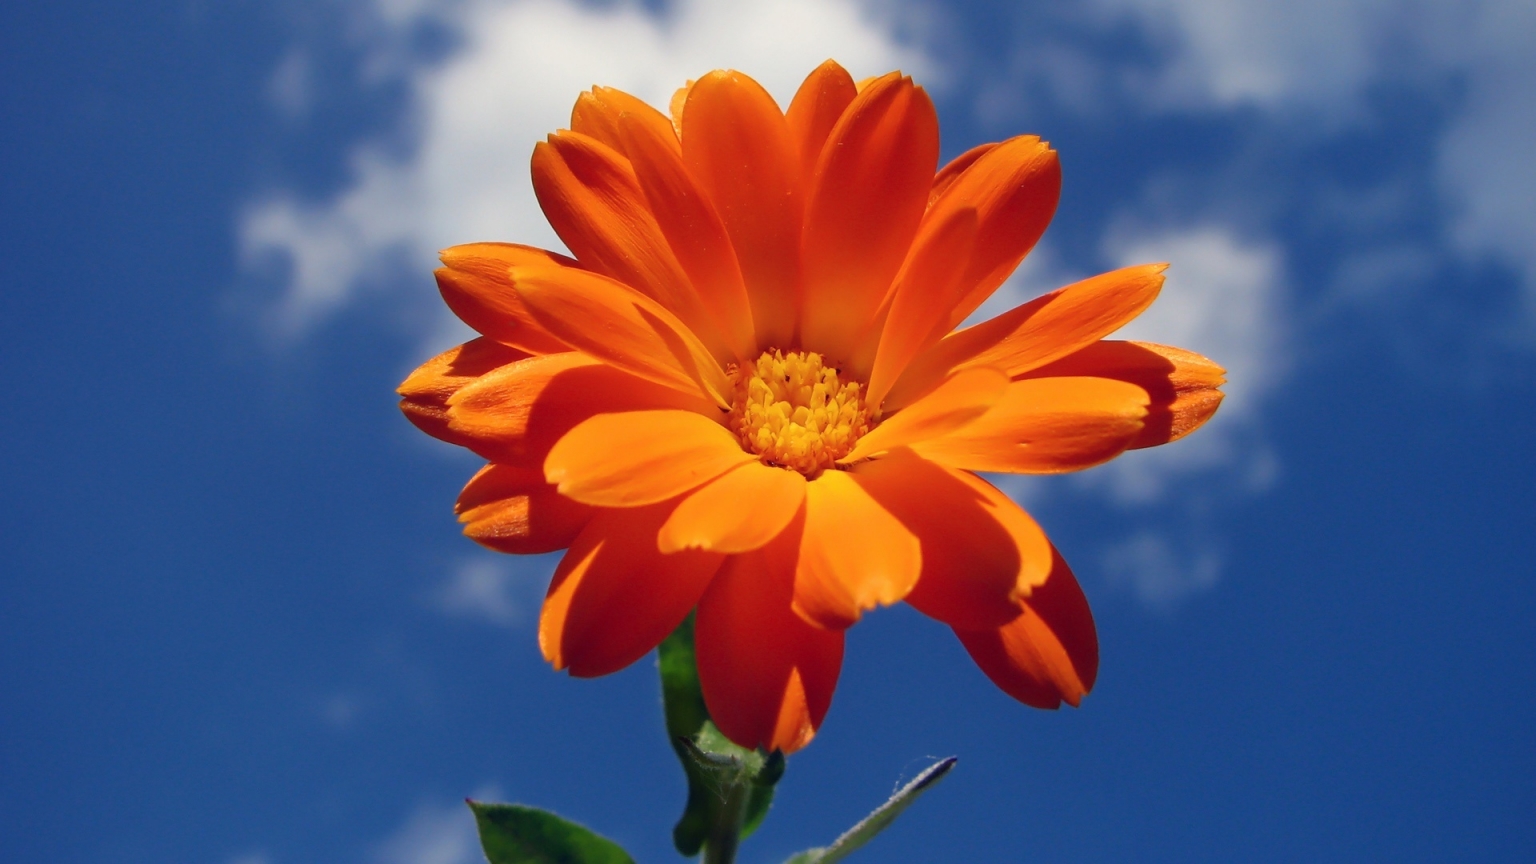 Orange Nice Flower for 1536 x 864 HDTV resolution